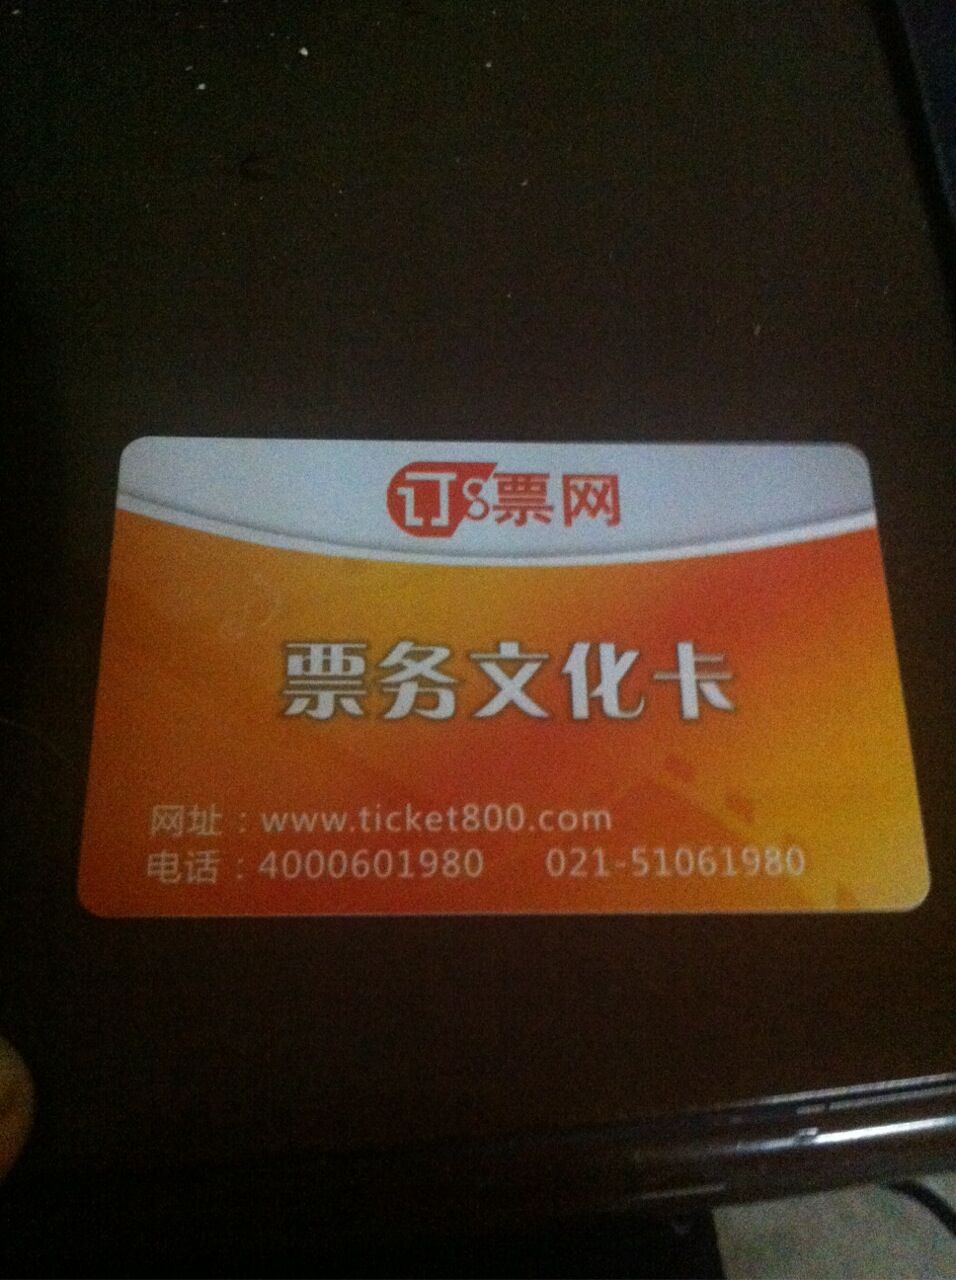 【订票网票务文化卡回收】上海订票网票务文化卡回收|订票网票务文化卡官网